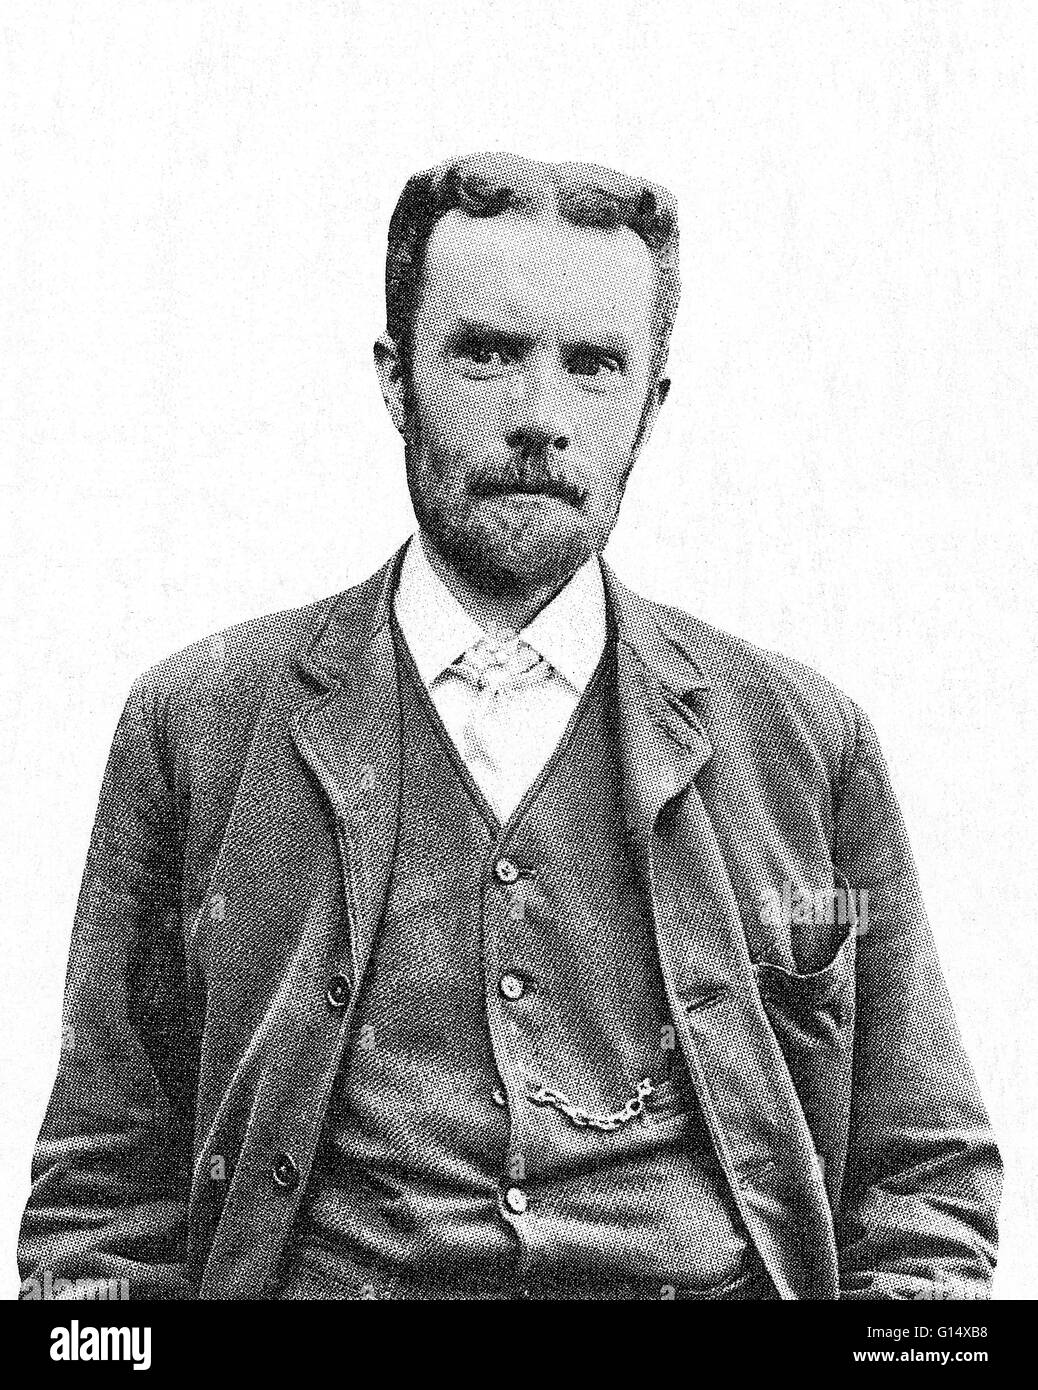 Oliver Heaviside (18. Mai 1850 - 3. Februar 1925) war ein Autodidakt englische Elektro-Ingenieur, Mathematiker und Physiker, komplexe Zahlen für die Untersuchung von elektrischen Schaltungen angepasst, mathematische Techniken zur Lösung der Diskrepanz erfunden Stockfoto